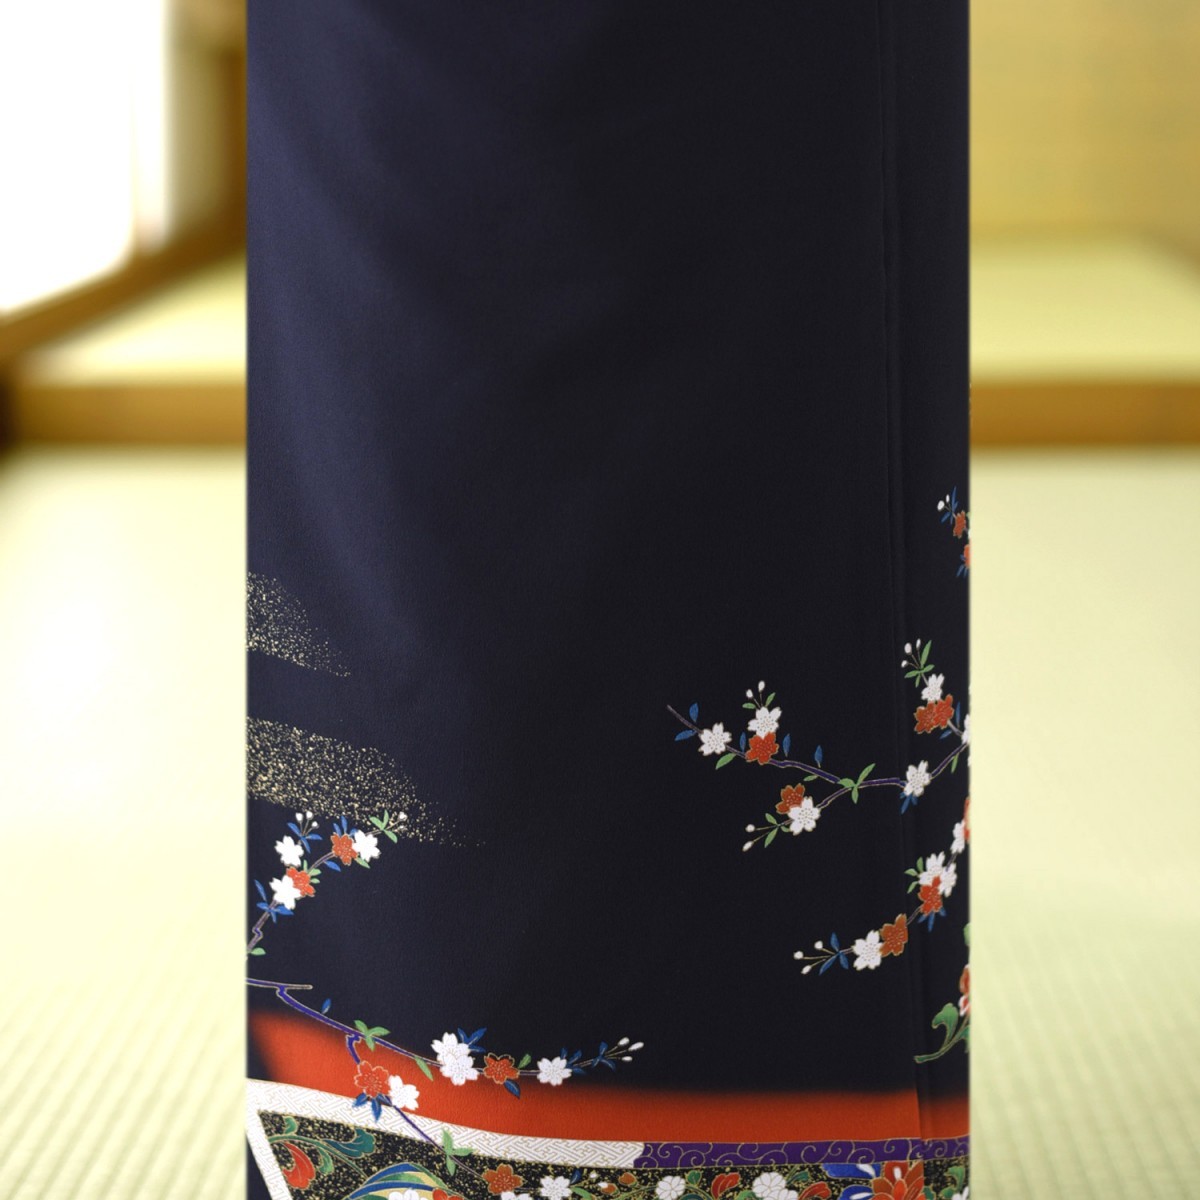  tomesode в аренду одиночный . летний потолок .{ рост }151cm~163cm ранг кимоно куротомэсодэ в аренду одиночный . лето кимоно в аренду свадьба . родители сестры .. родители группа ряд сиденье . оборудование . костюм кимоно куротомэсодэ 5 месяц ~9 месяц 